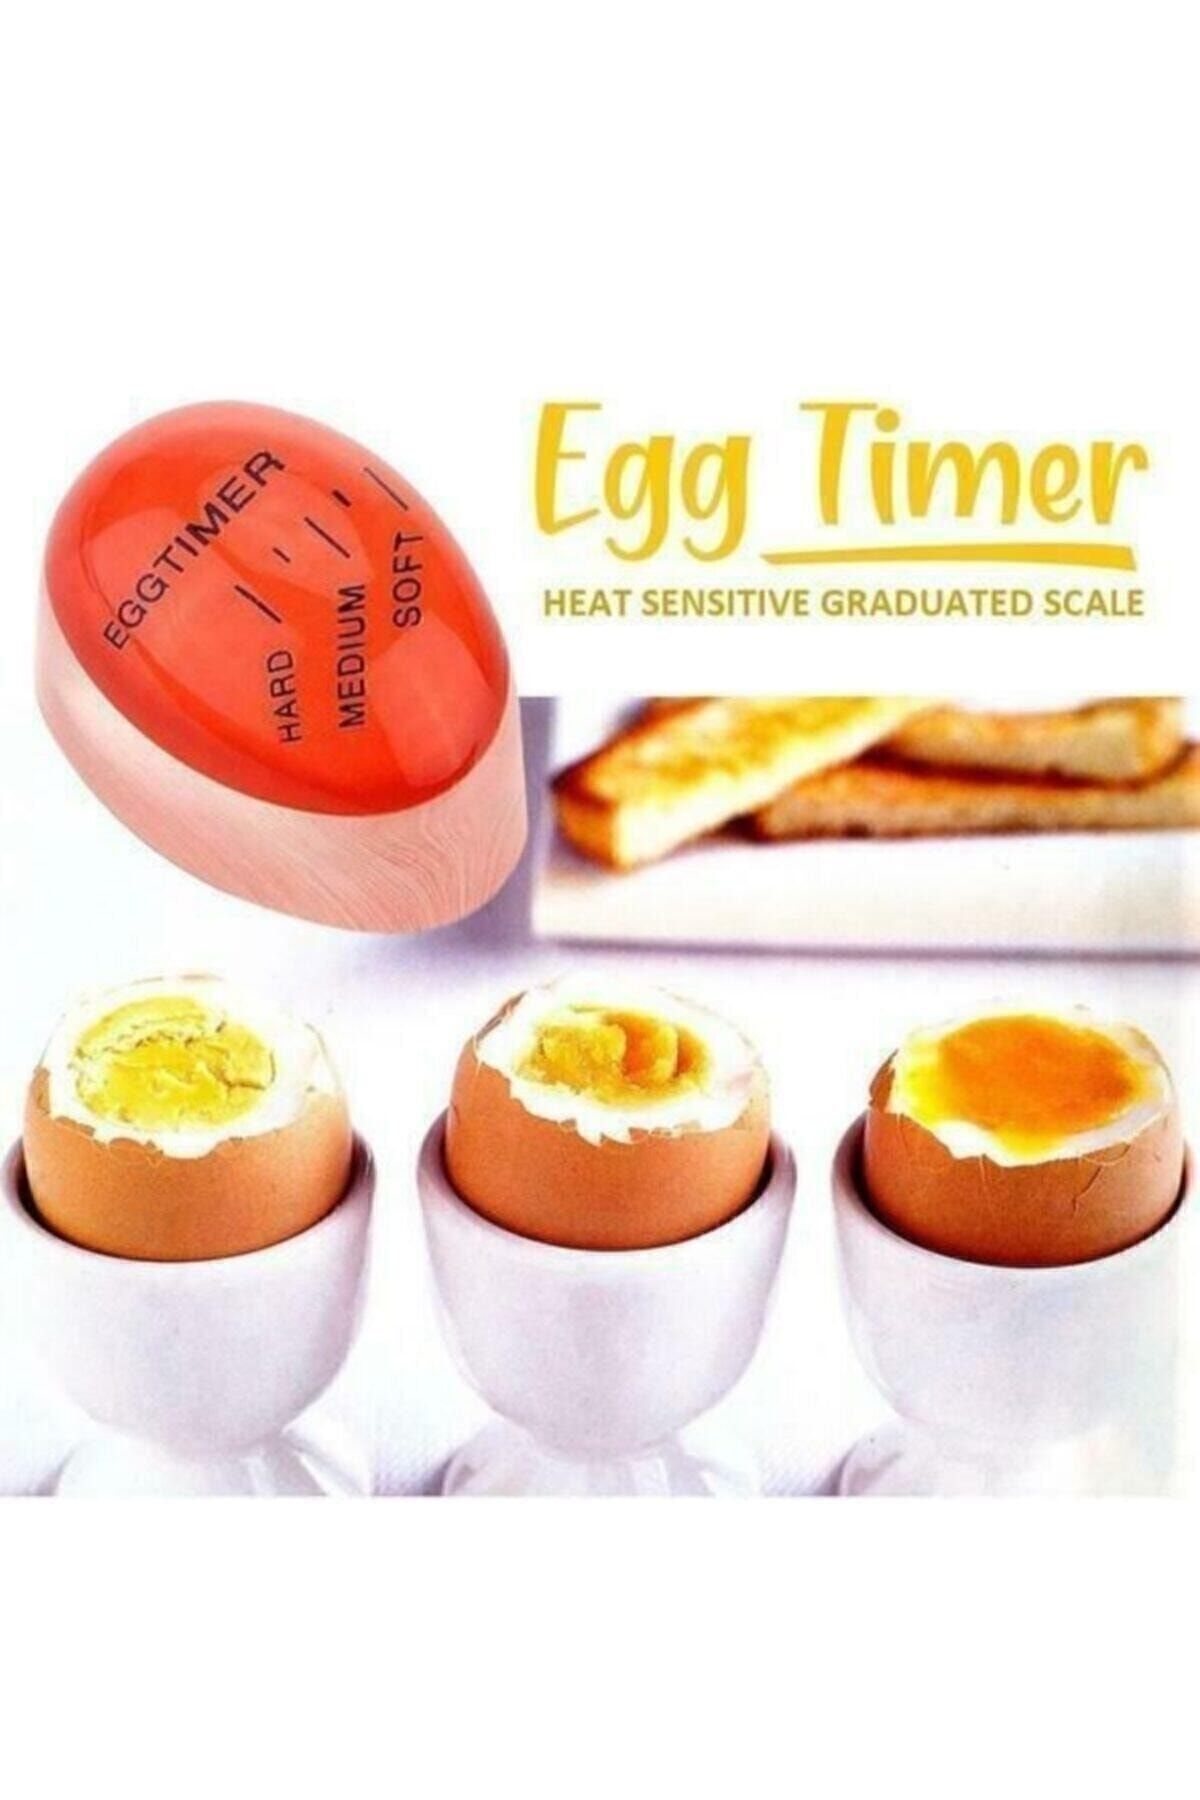 AKDAG HOME Dublör Yumurta Zamanlayıcı Egg Timer Pişirme Haşlama Süresi Aparatı Zaman Ayarlama Göstergesi